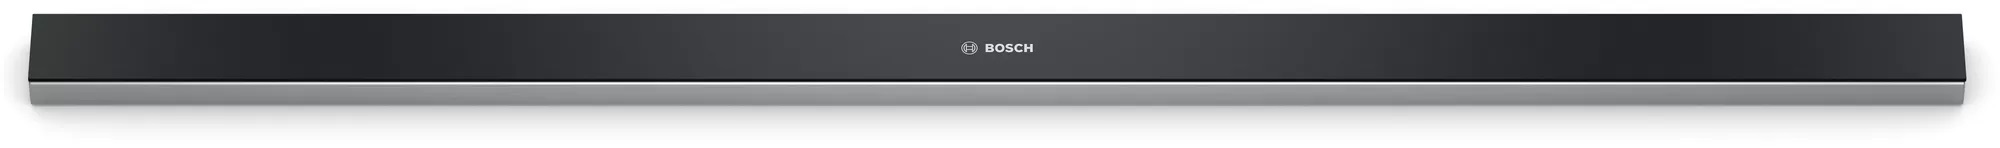 Bild von Bosch DSZ4986 Griffleiste schwarz